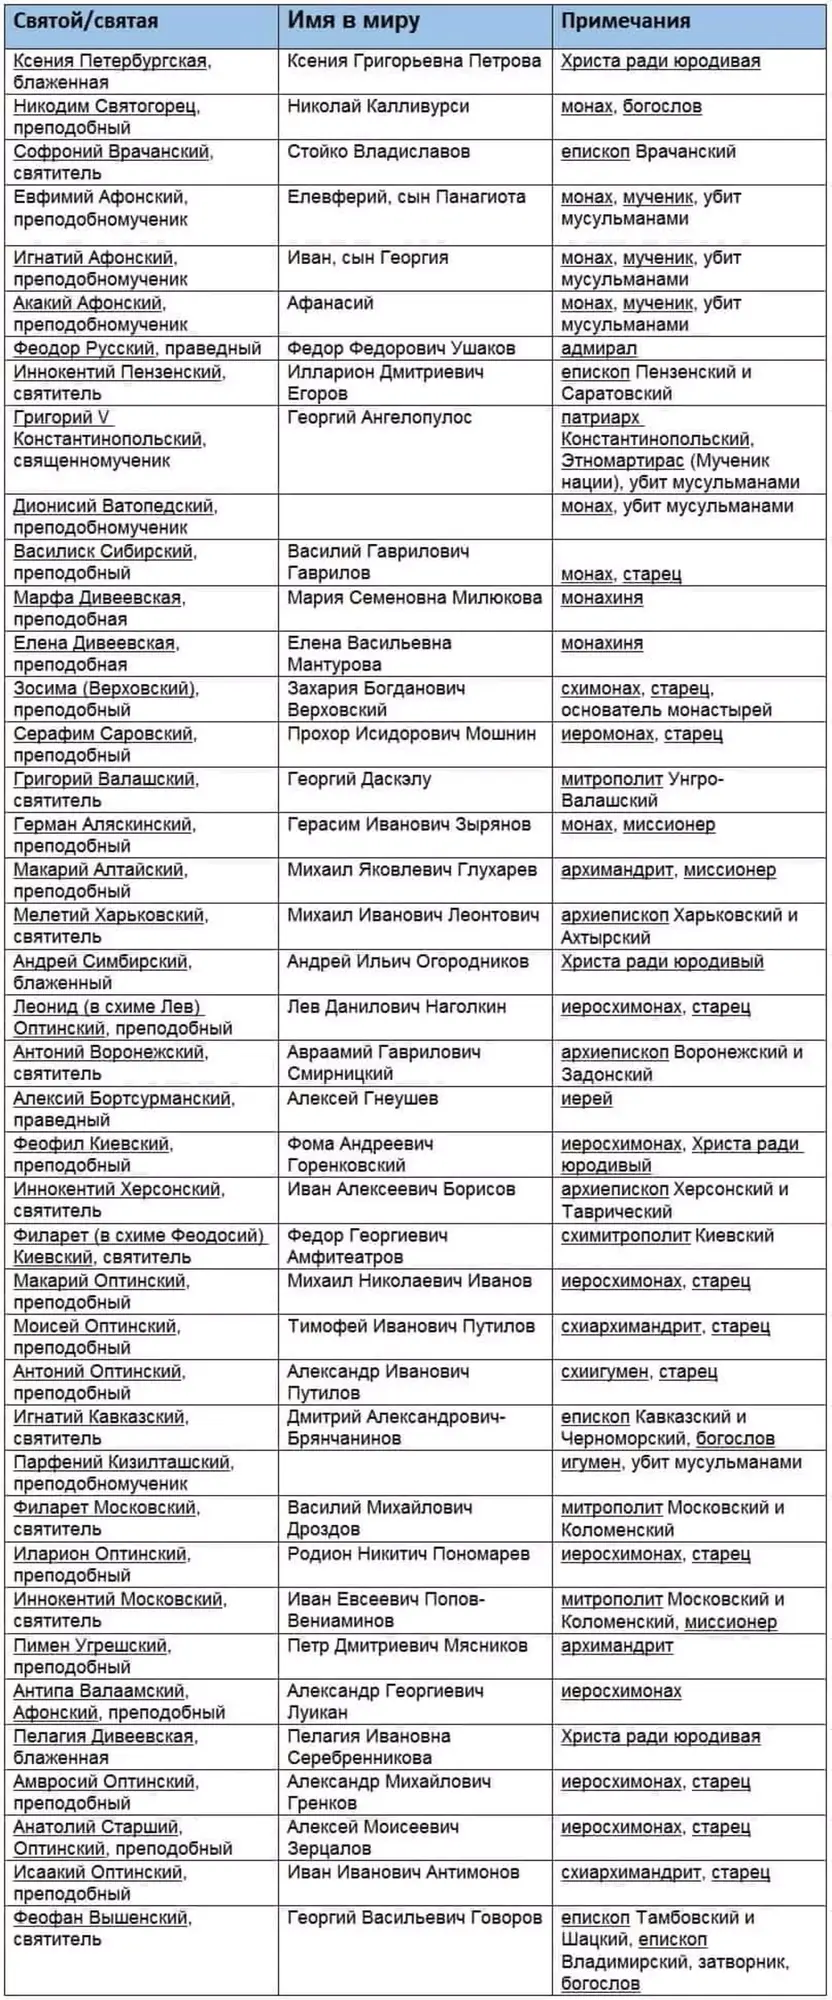 Хронологический список святых русской православной церкви xix века